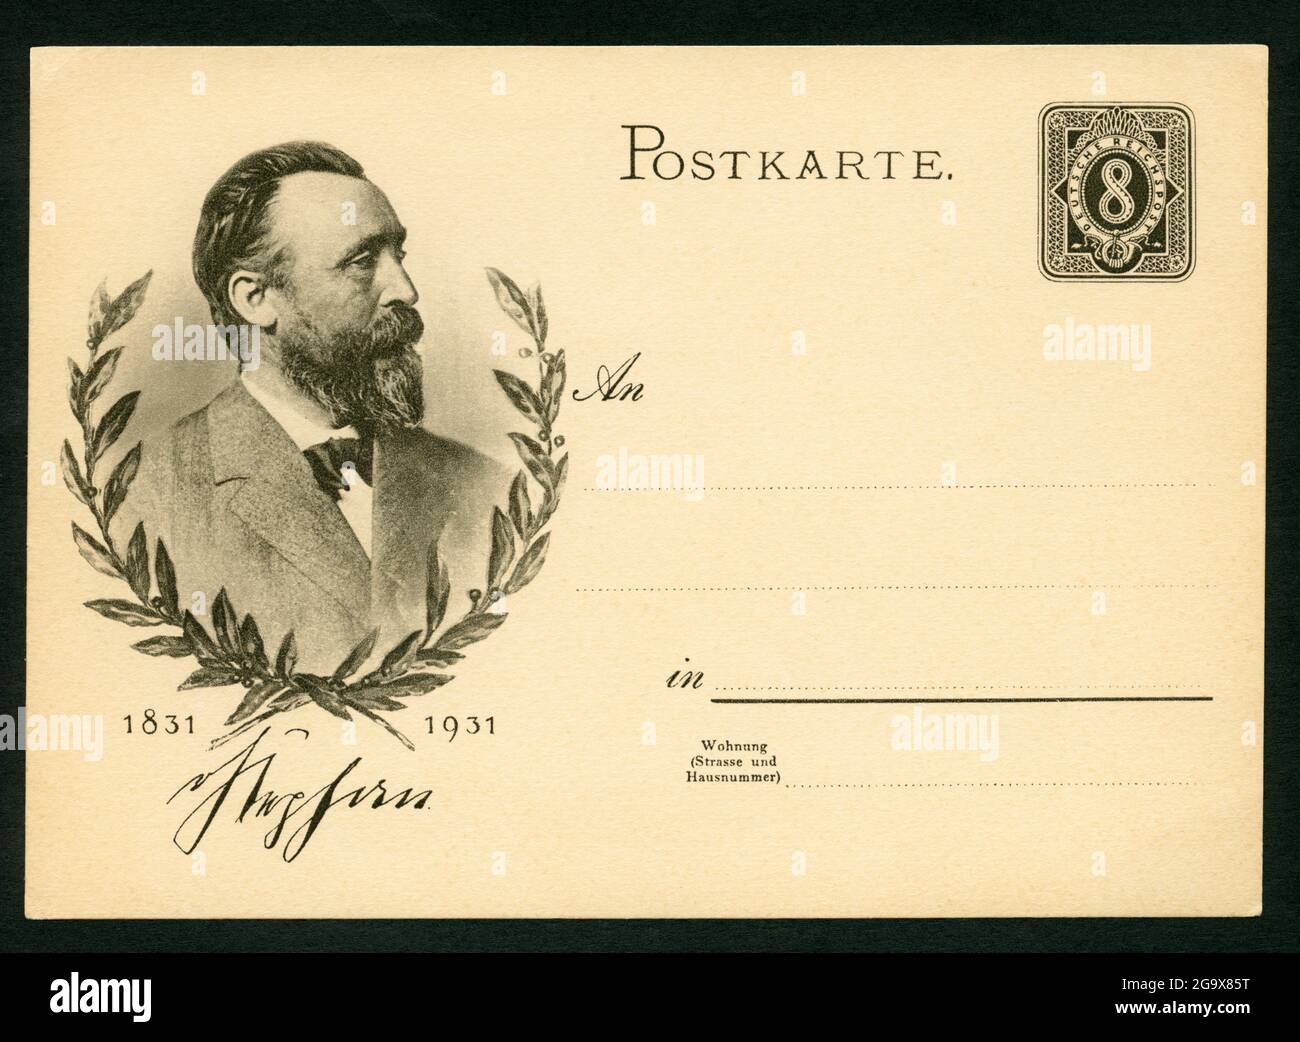 Cartolina con stampato il bollo da 8 centine del Reichspost tedesco e il ritratto di Heinrich von Stephan, IL DIRITTO D'AUTORE DELL'ARTISTA NON DEVE ESSERE CANCELLATO Foto Stock